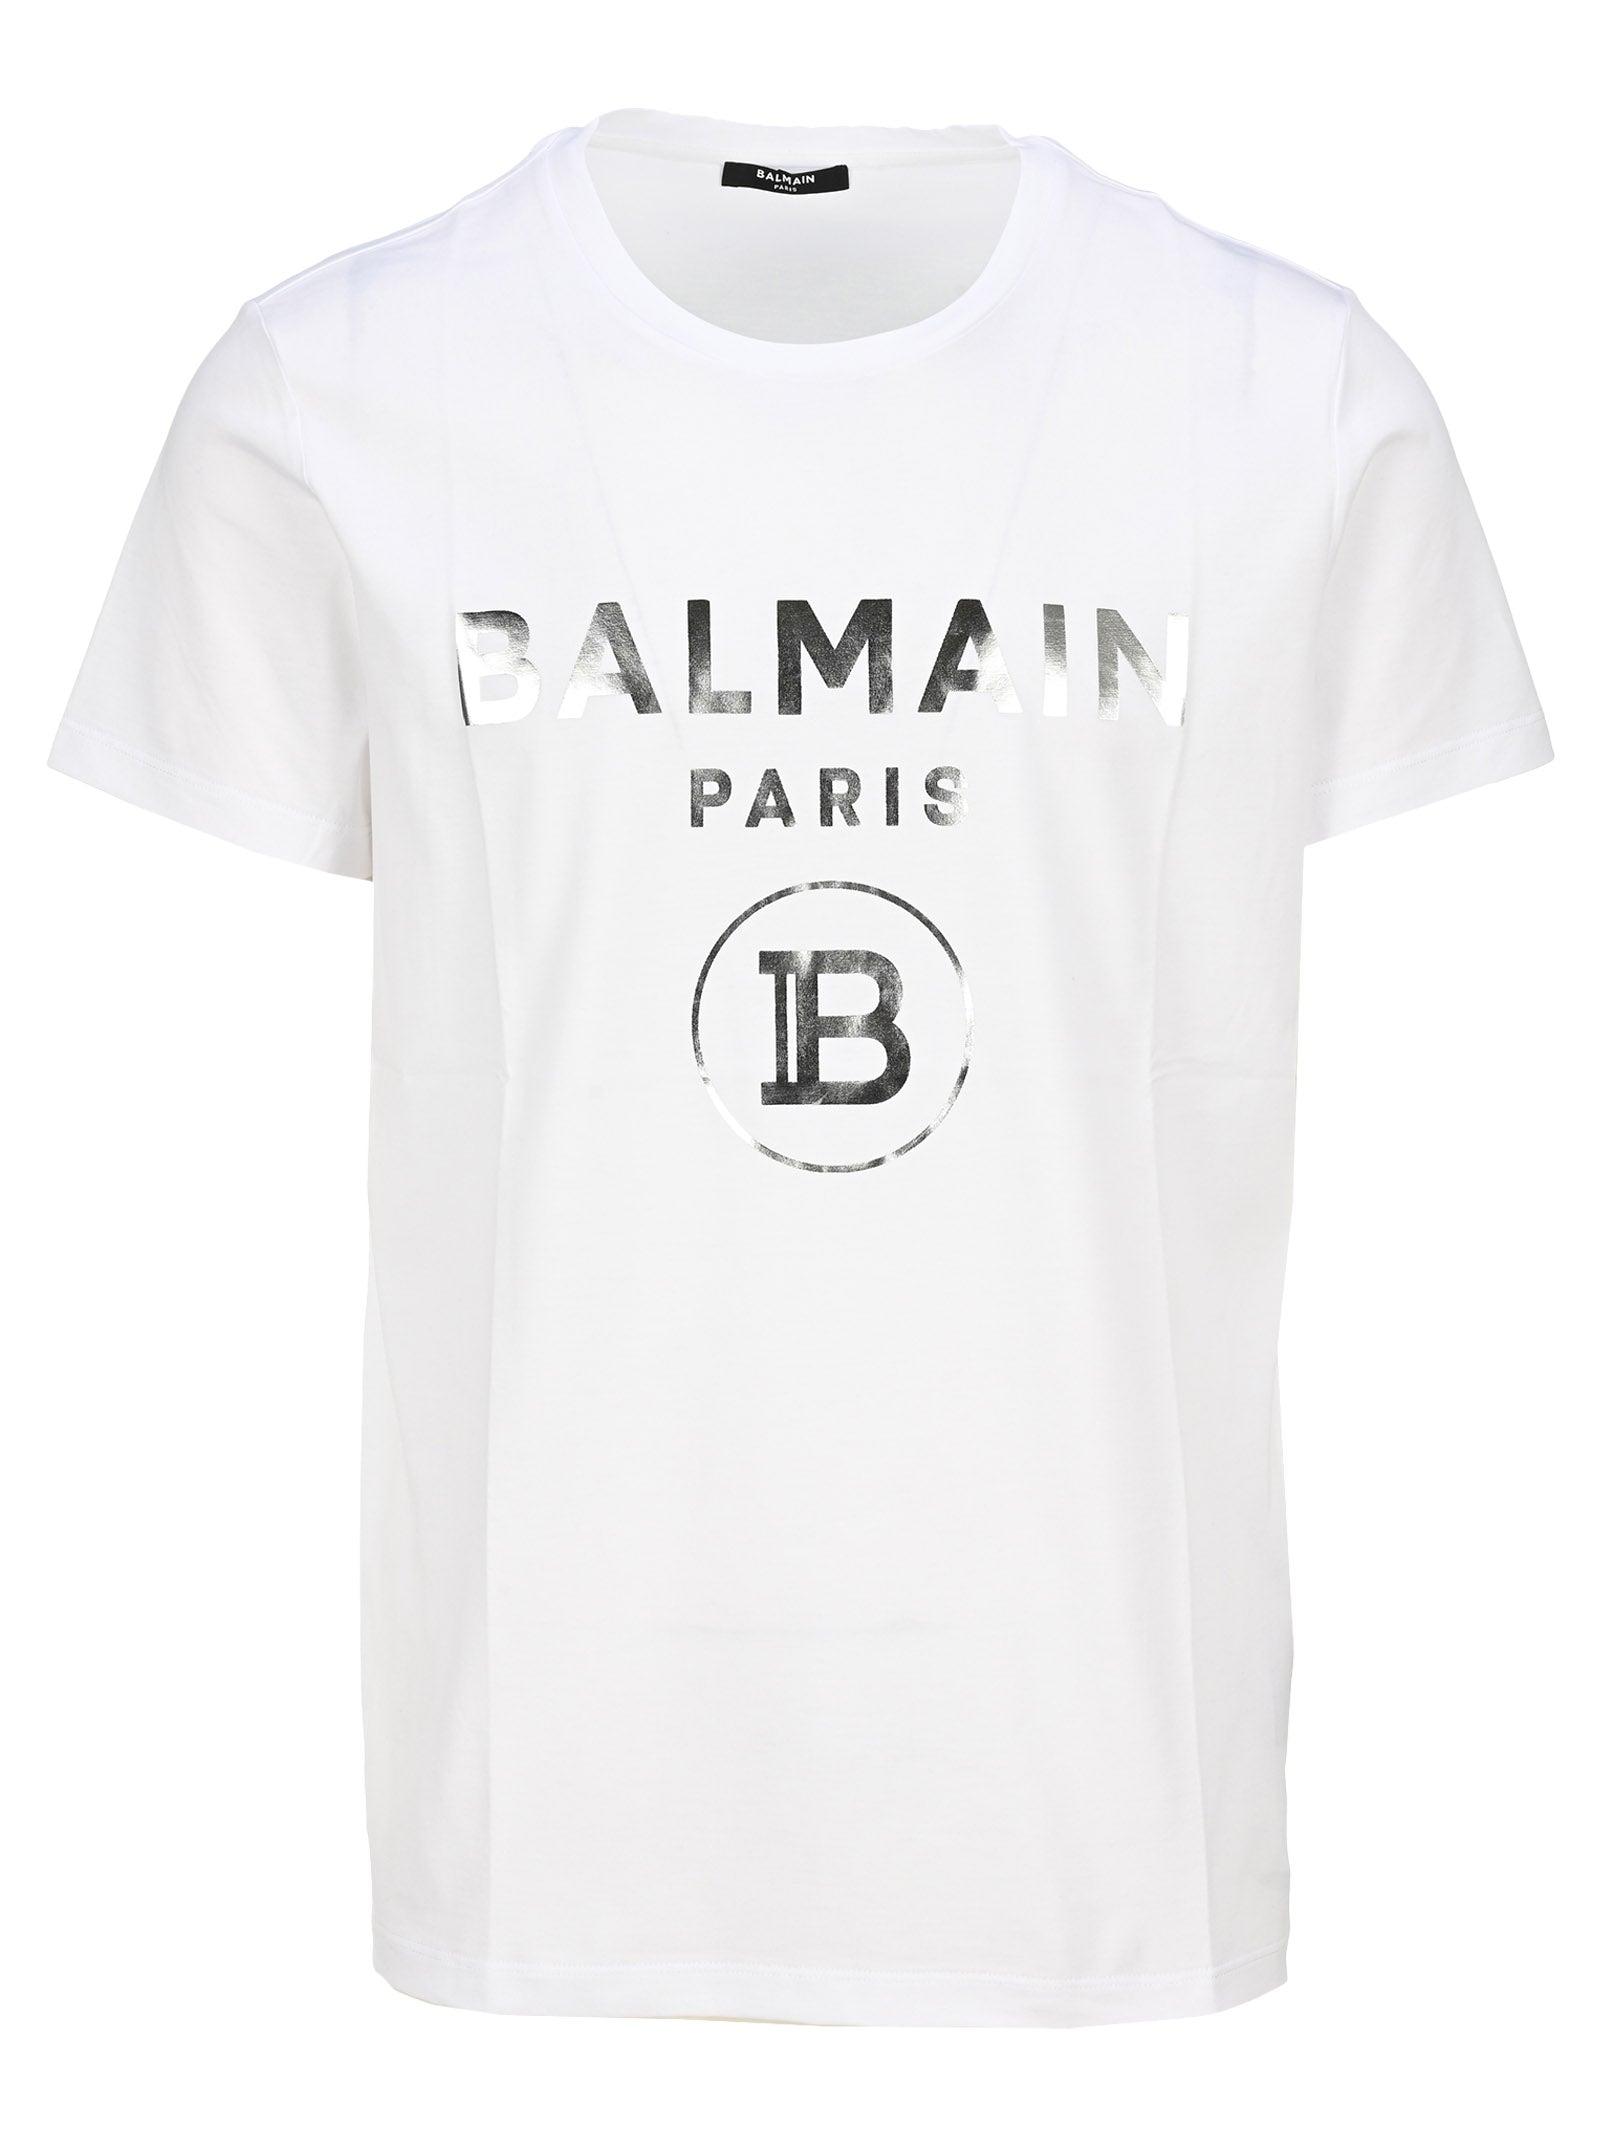 kartoffel I hele verden fatning Balmain Silver Foil T-shirt in White for Men | Lyst